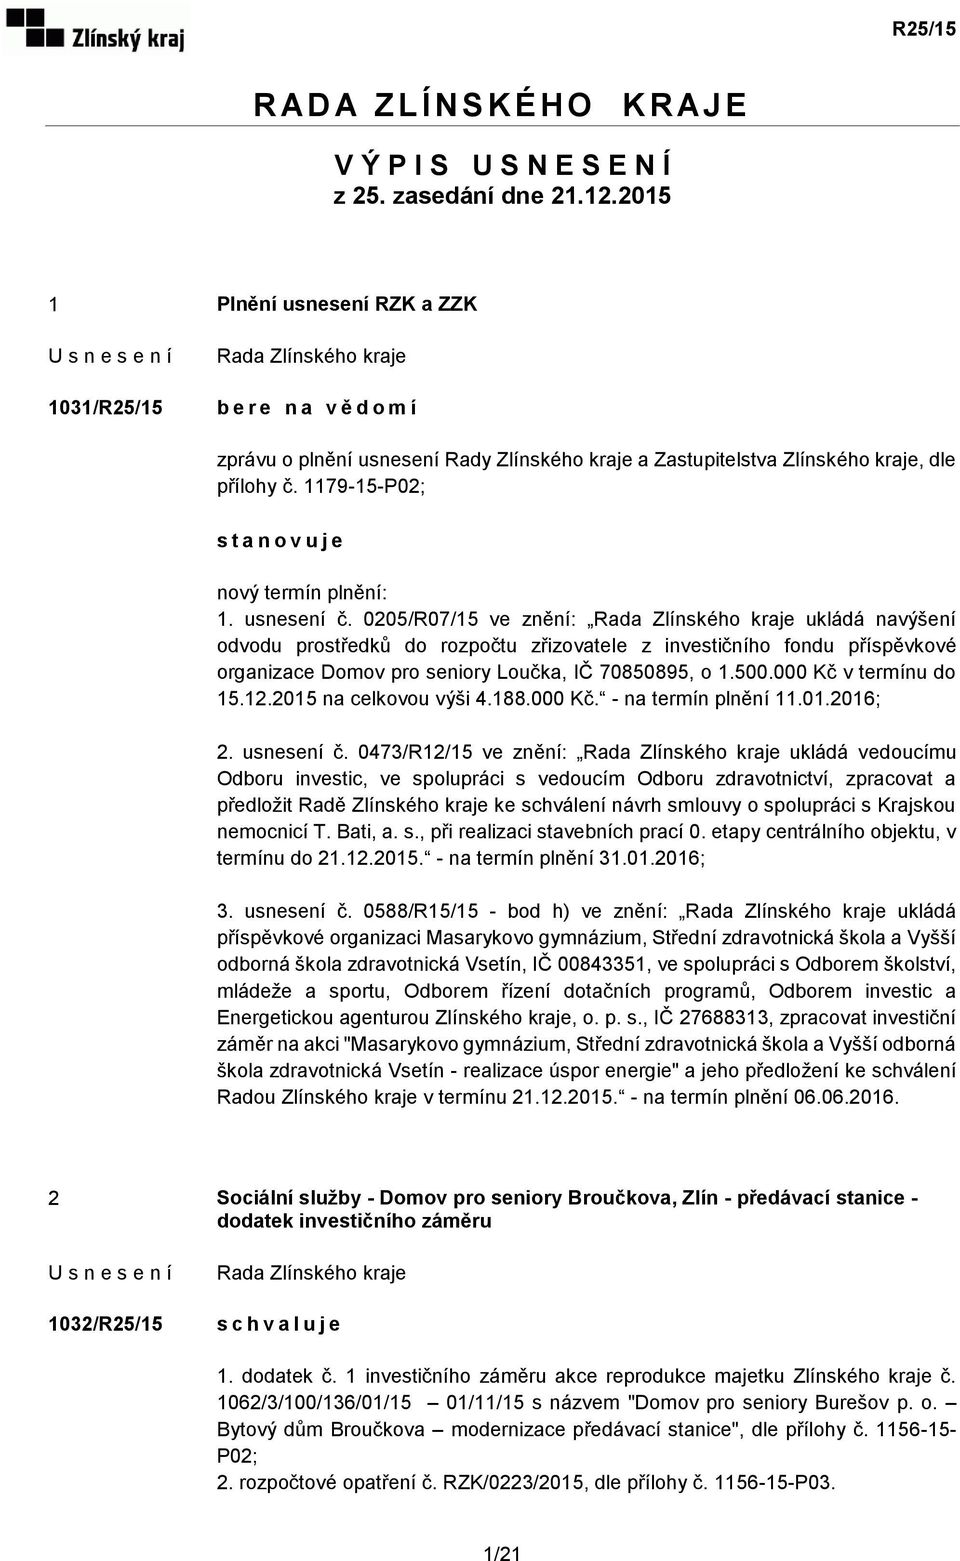 usnesení č. 0205/R07/15 ve znění: ukládá navýšení odvodu prostředků do rozpočtu zřizovatele z investičního fondu příspěvkové organizace Domov pro seniory Loučka, IČ 70850895, o 1.500.